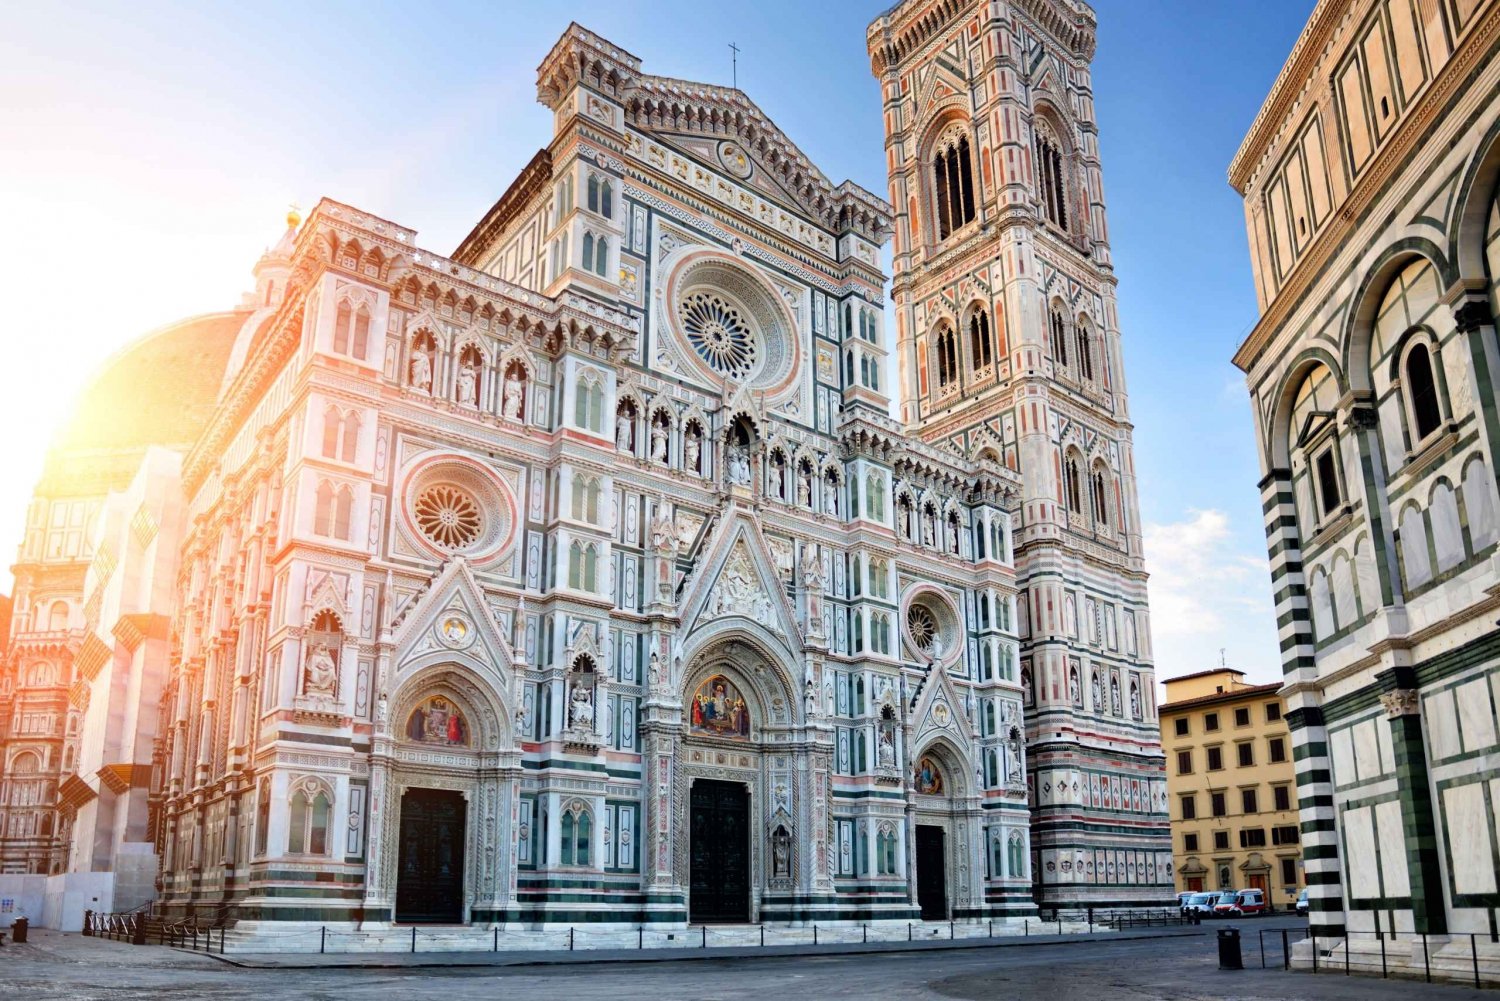 Florencja: Zwiedzanie muzeum Duomo i wspinaczka na kopułę Brunelleschiego